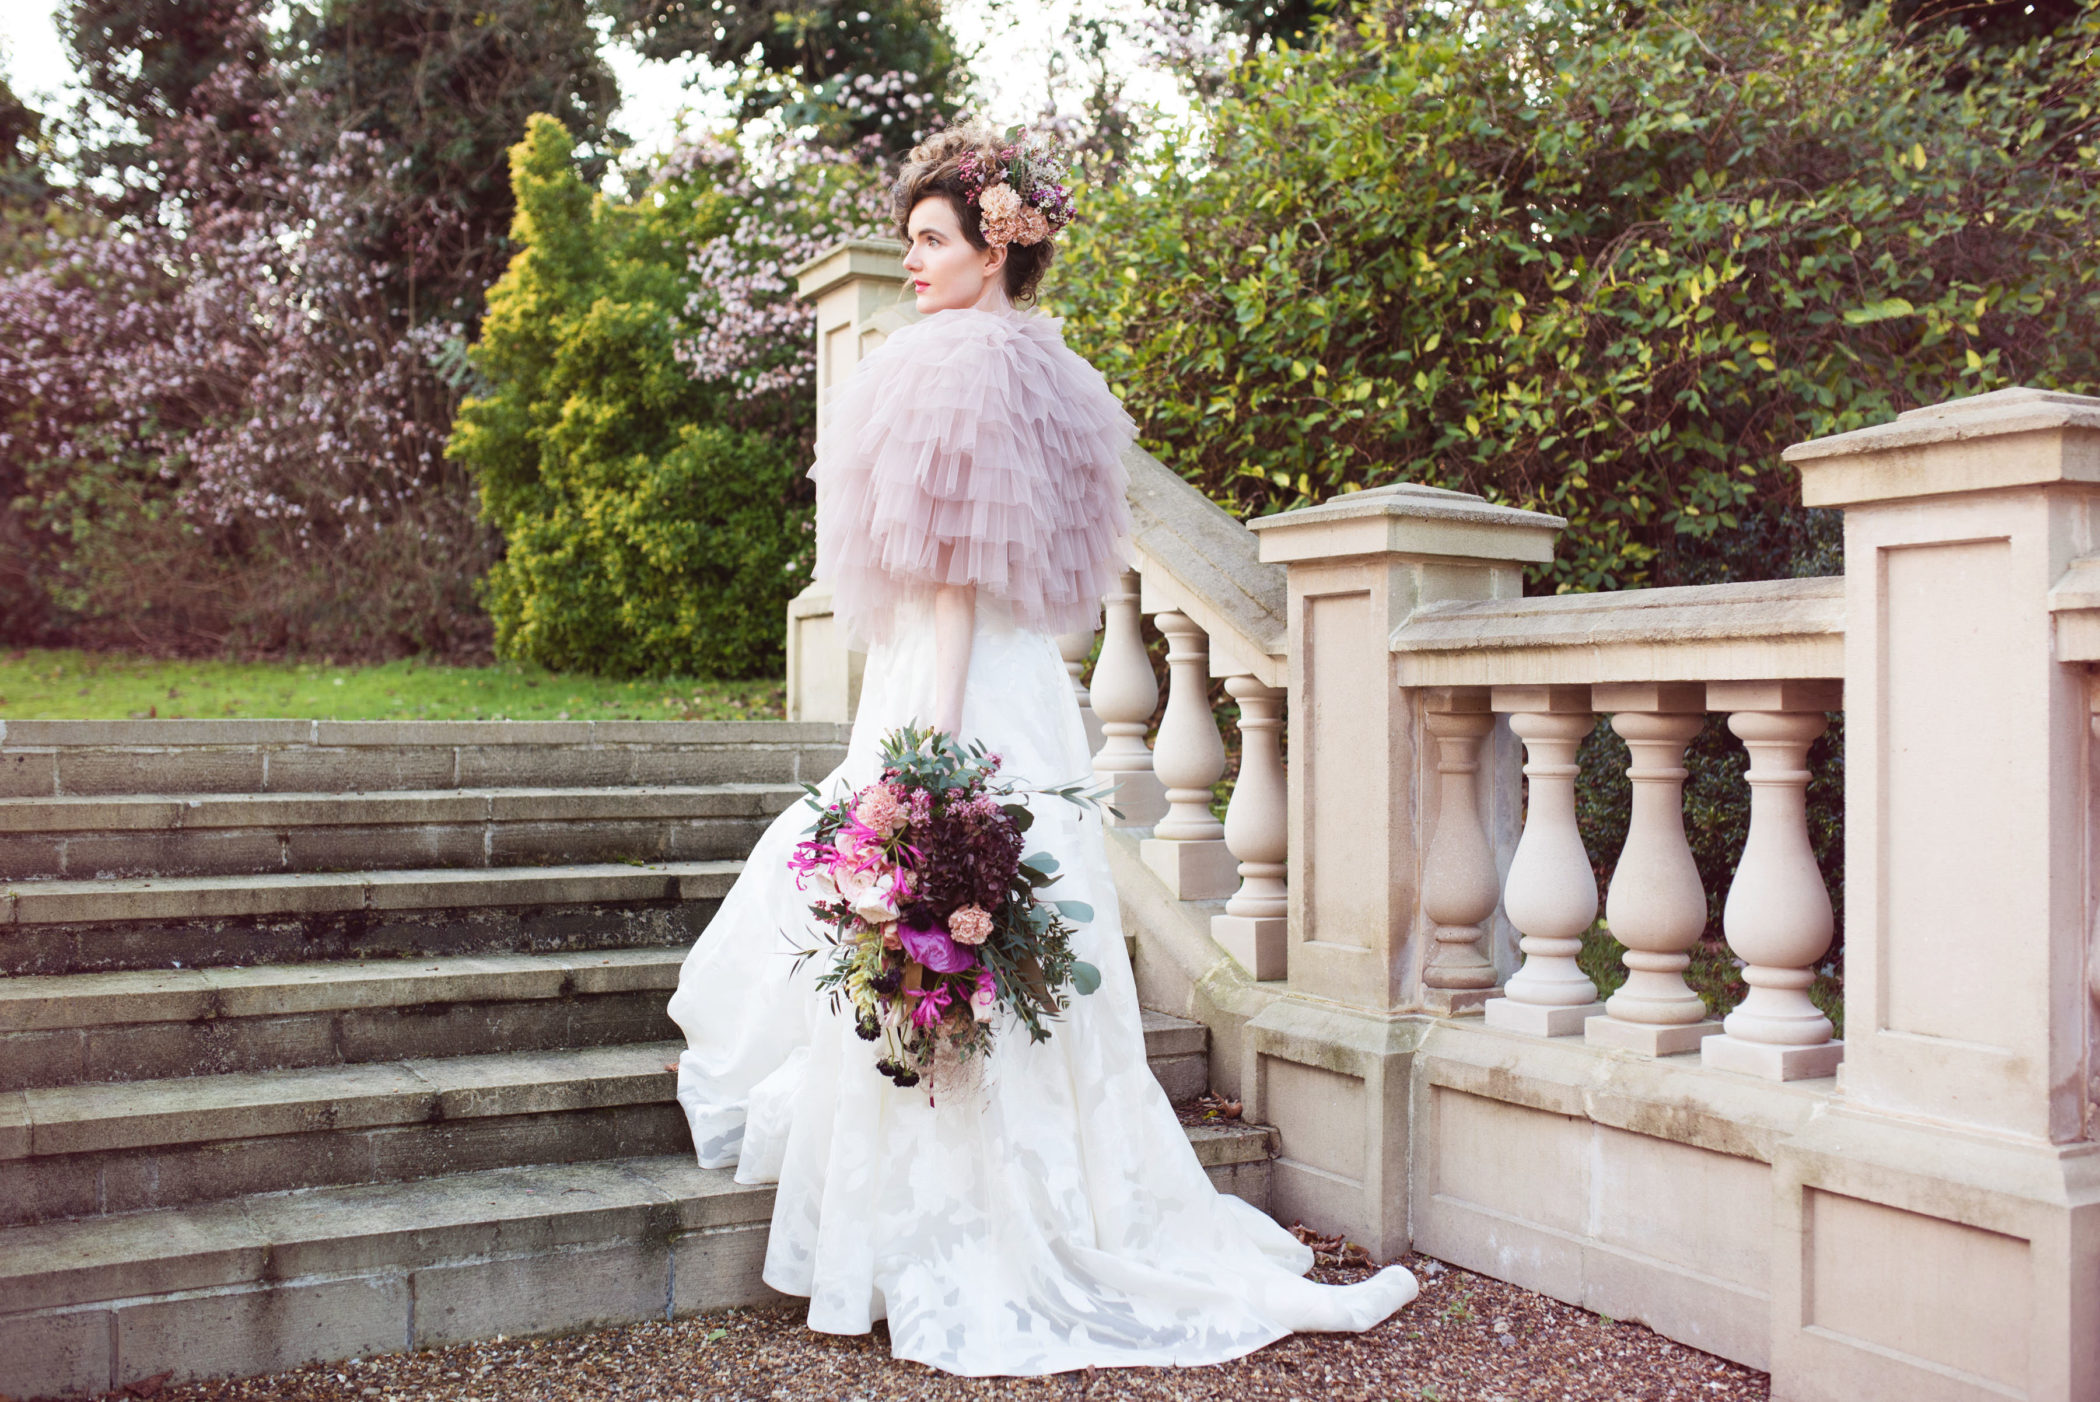 Surrey editorial bridal photography